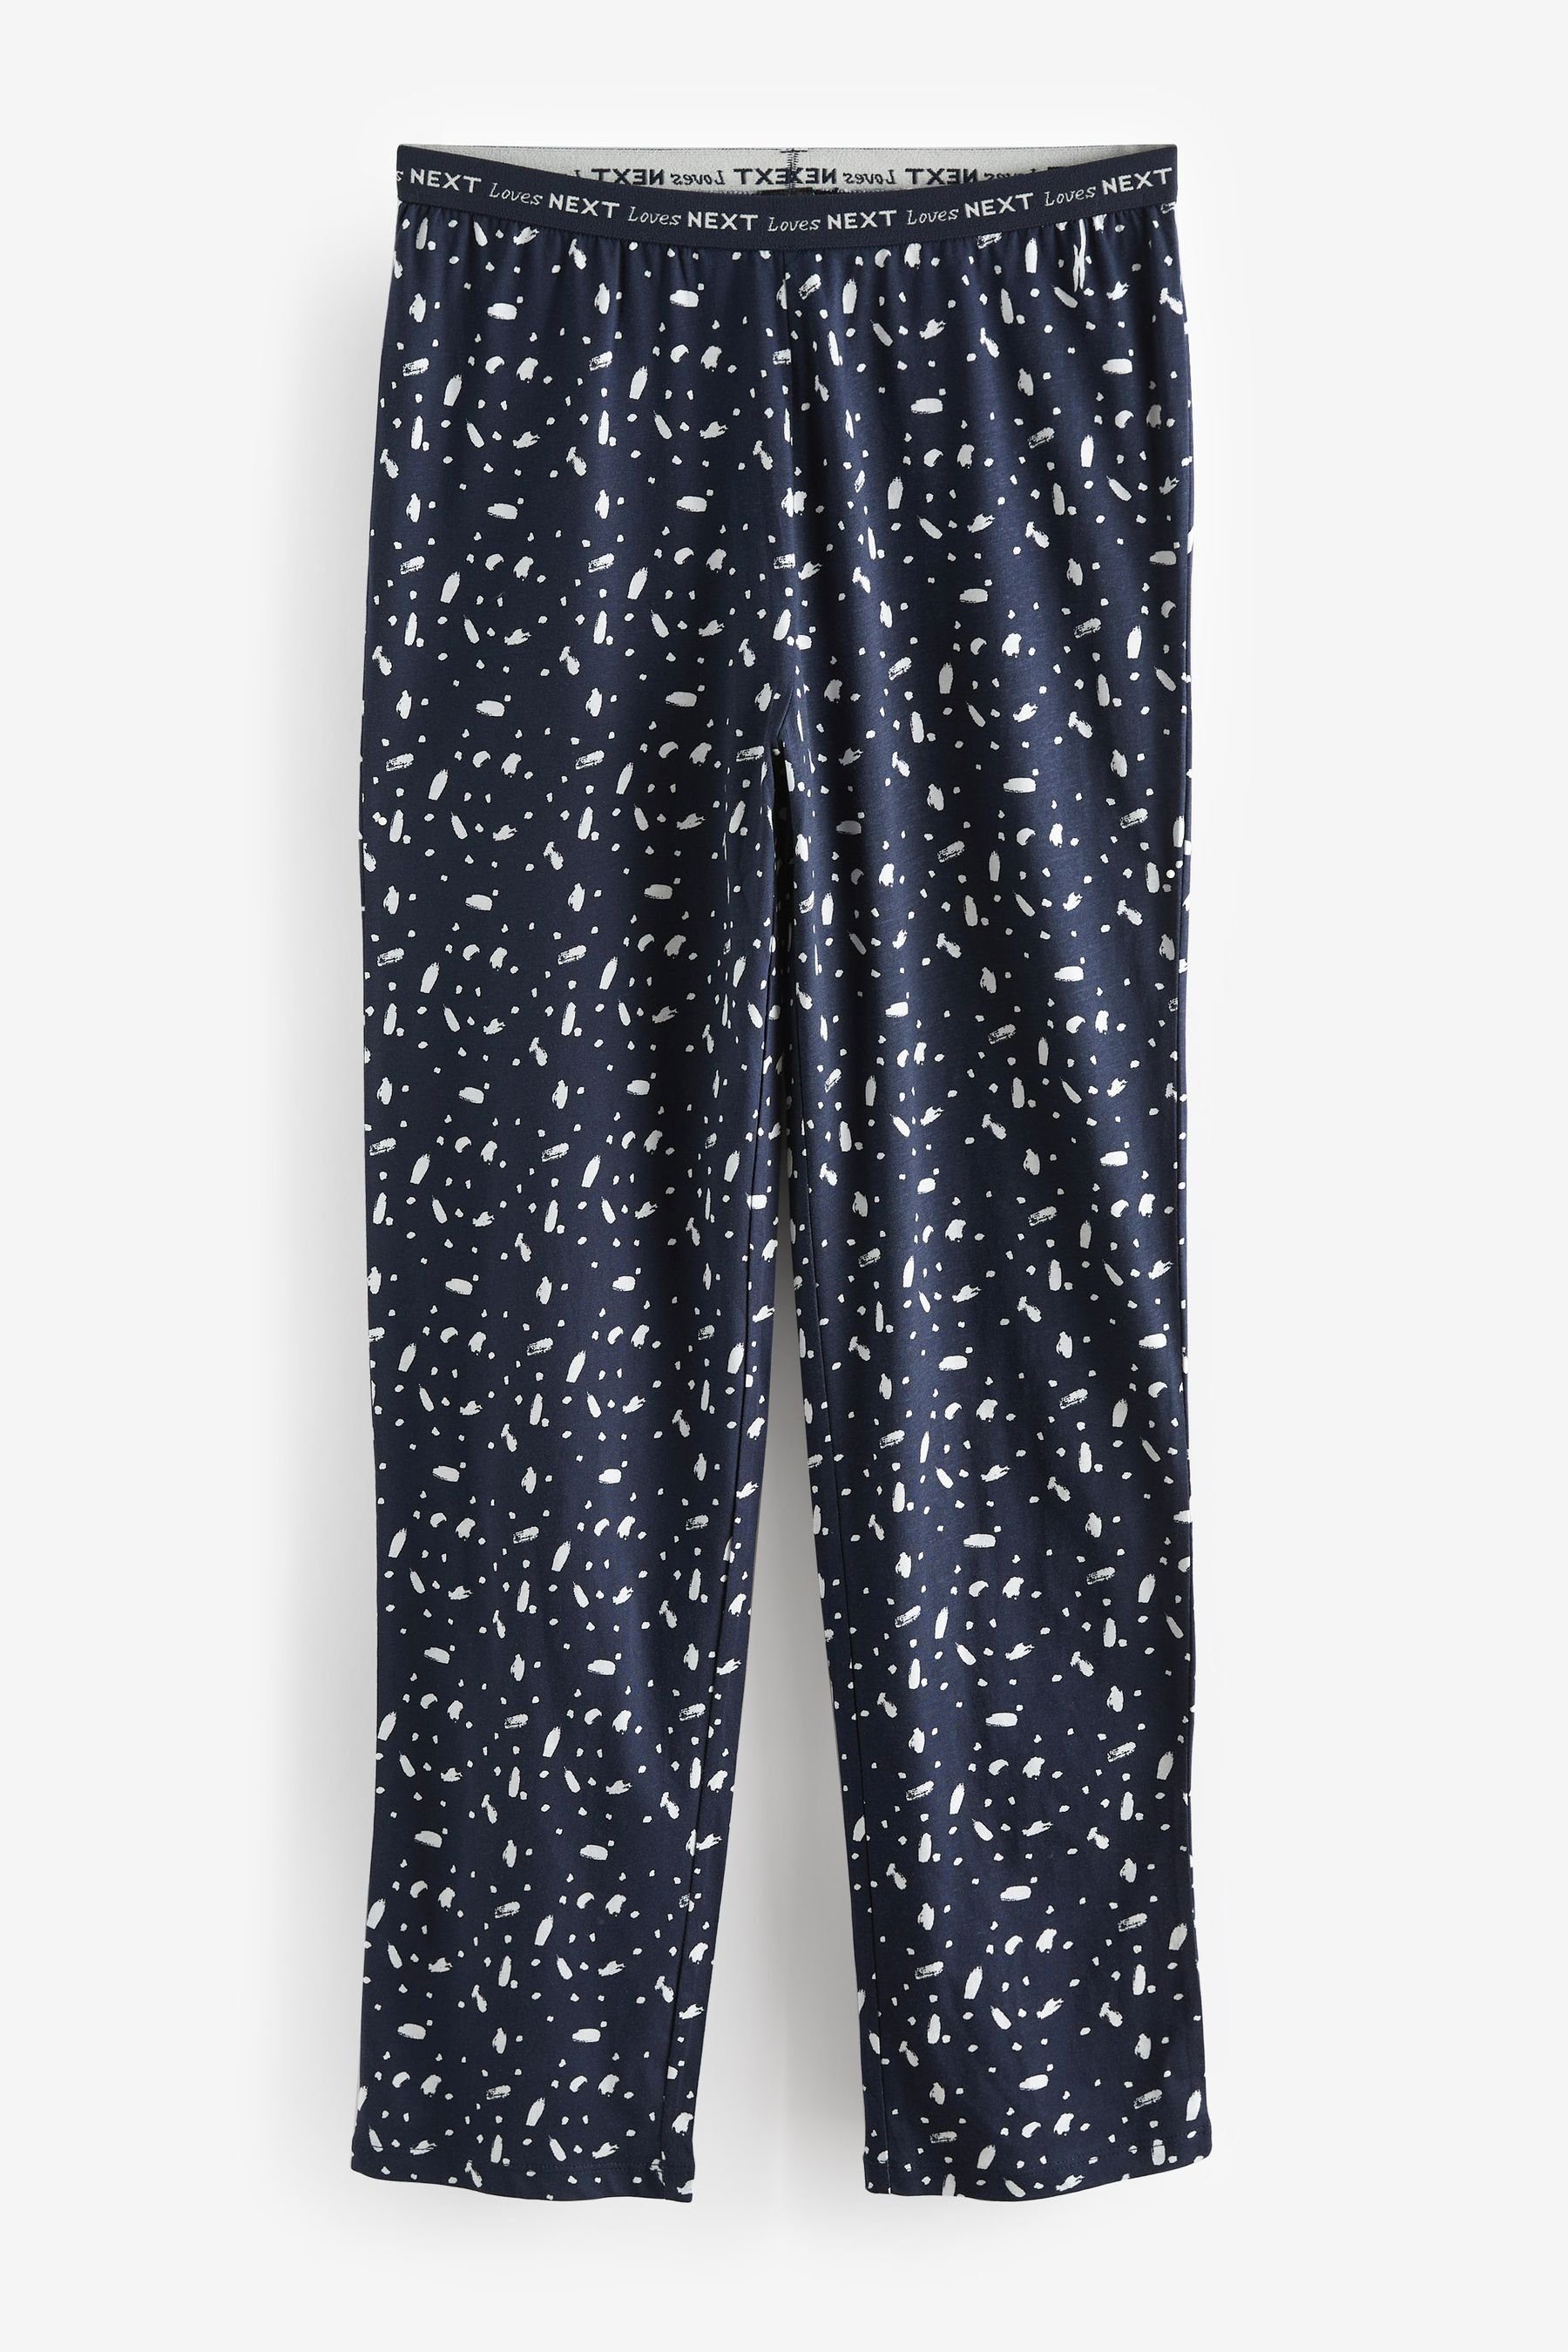 Next Pyjama Langärmeliger Navy tlg) (2 Kurzgröße Baumwolle, Schlafanzug aus